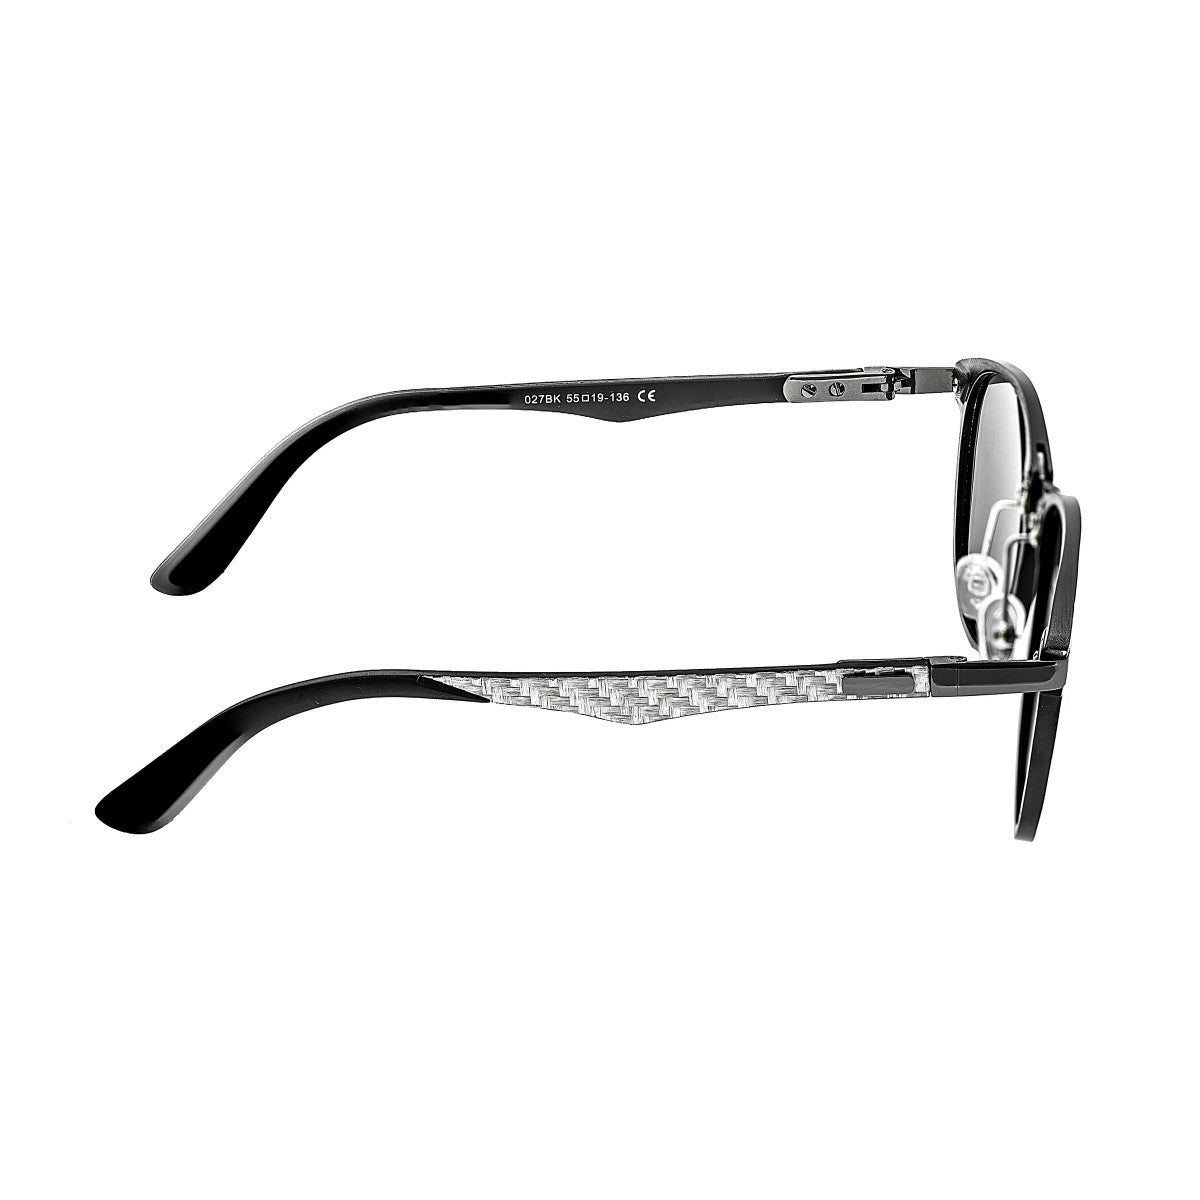 Breed Cetus Aluminium and Carbon Fiber Polarized Sunglasses - Black/Gold - BSG027BK